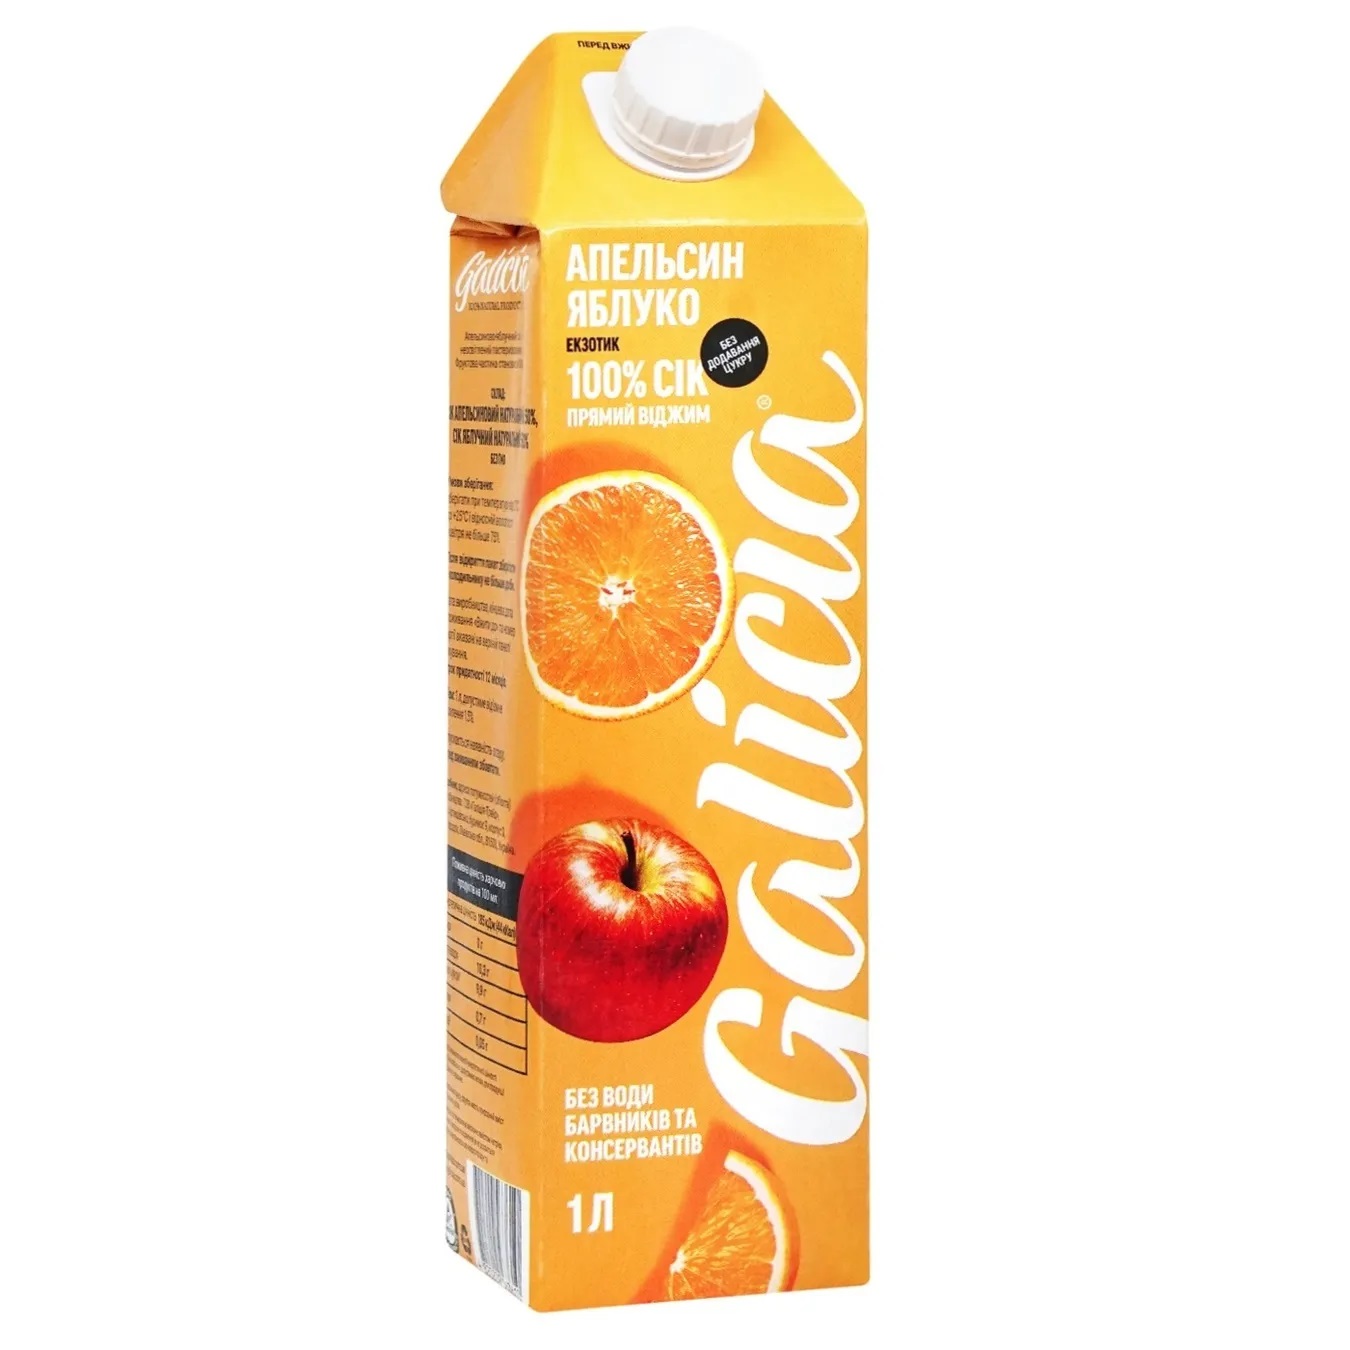 Galicia Orange-Apple Juice 1l